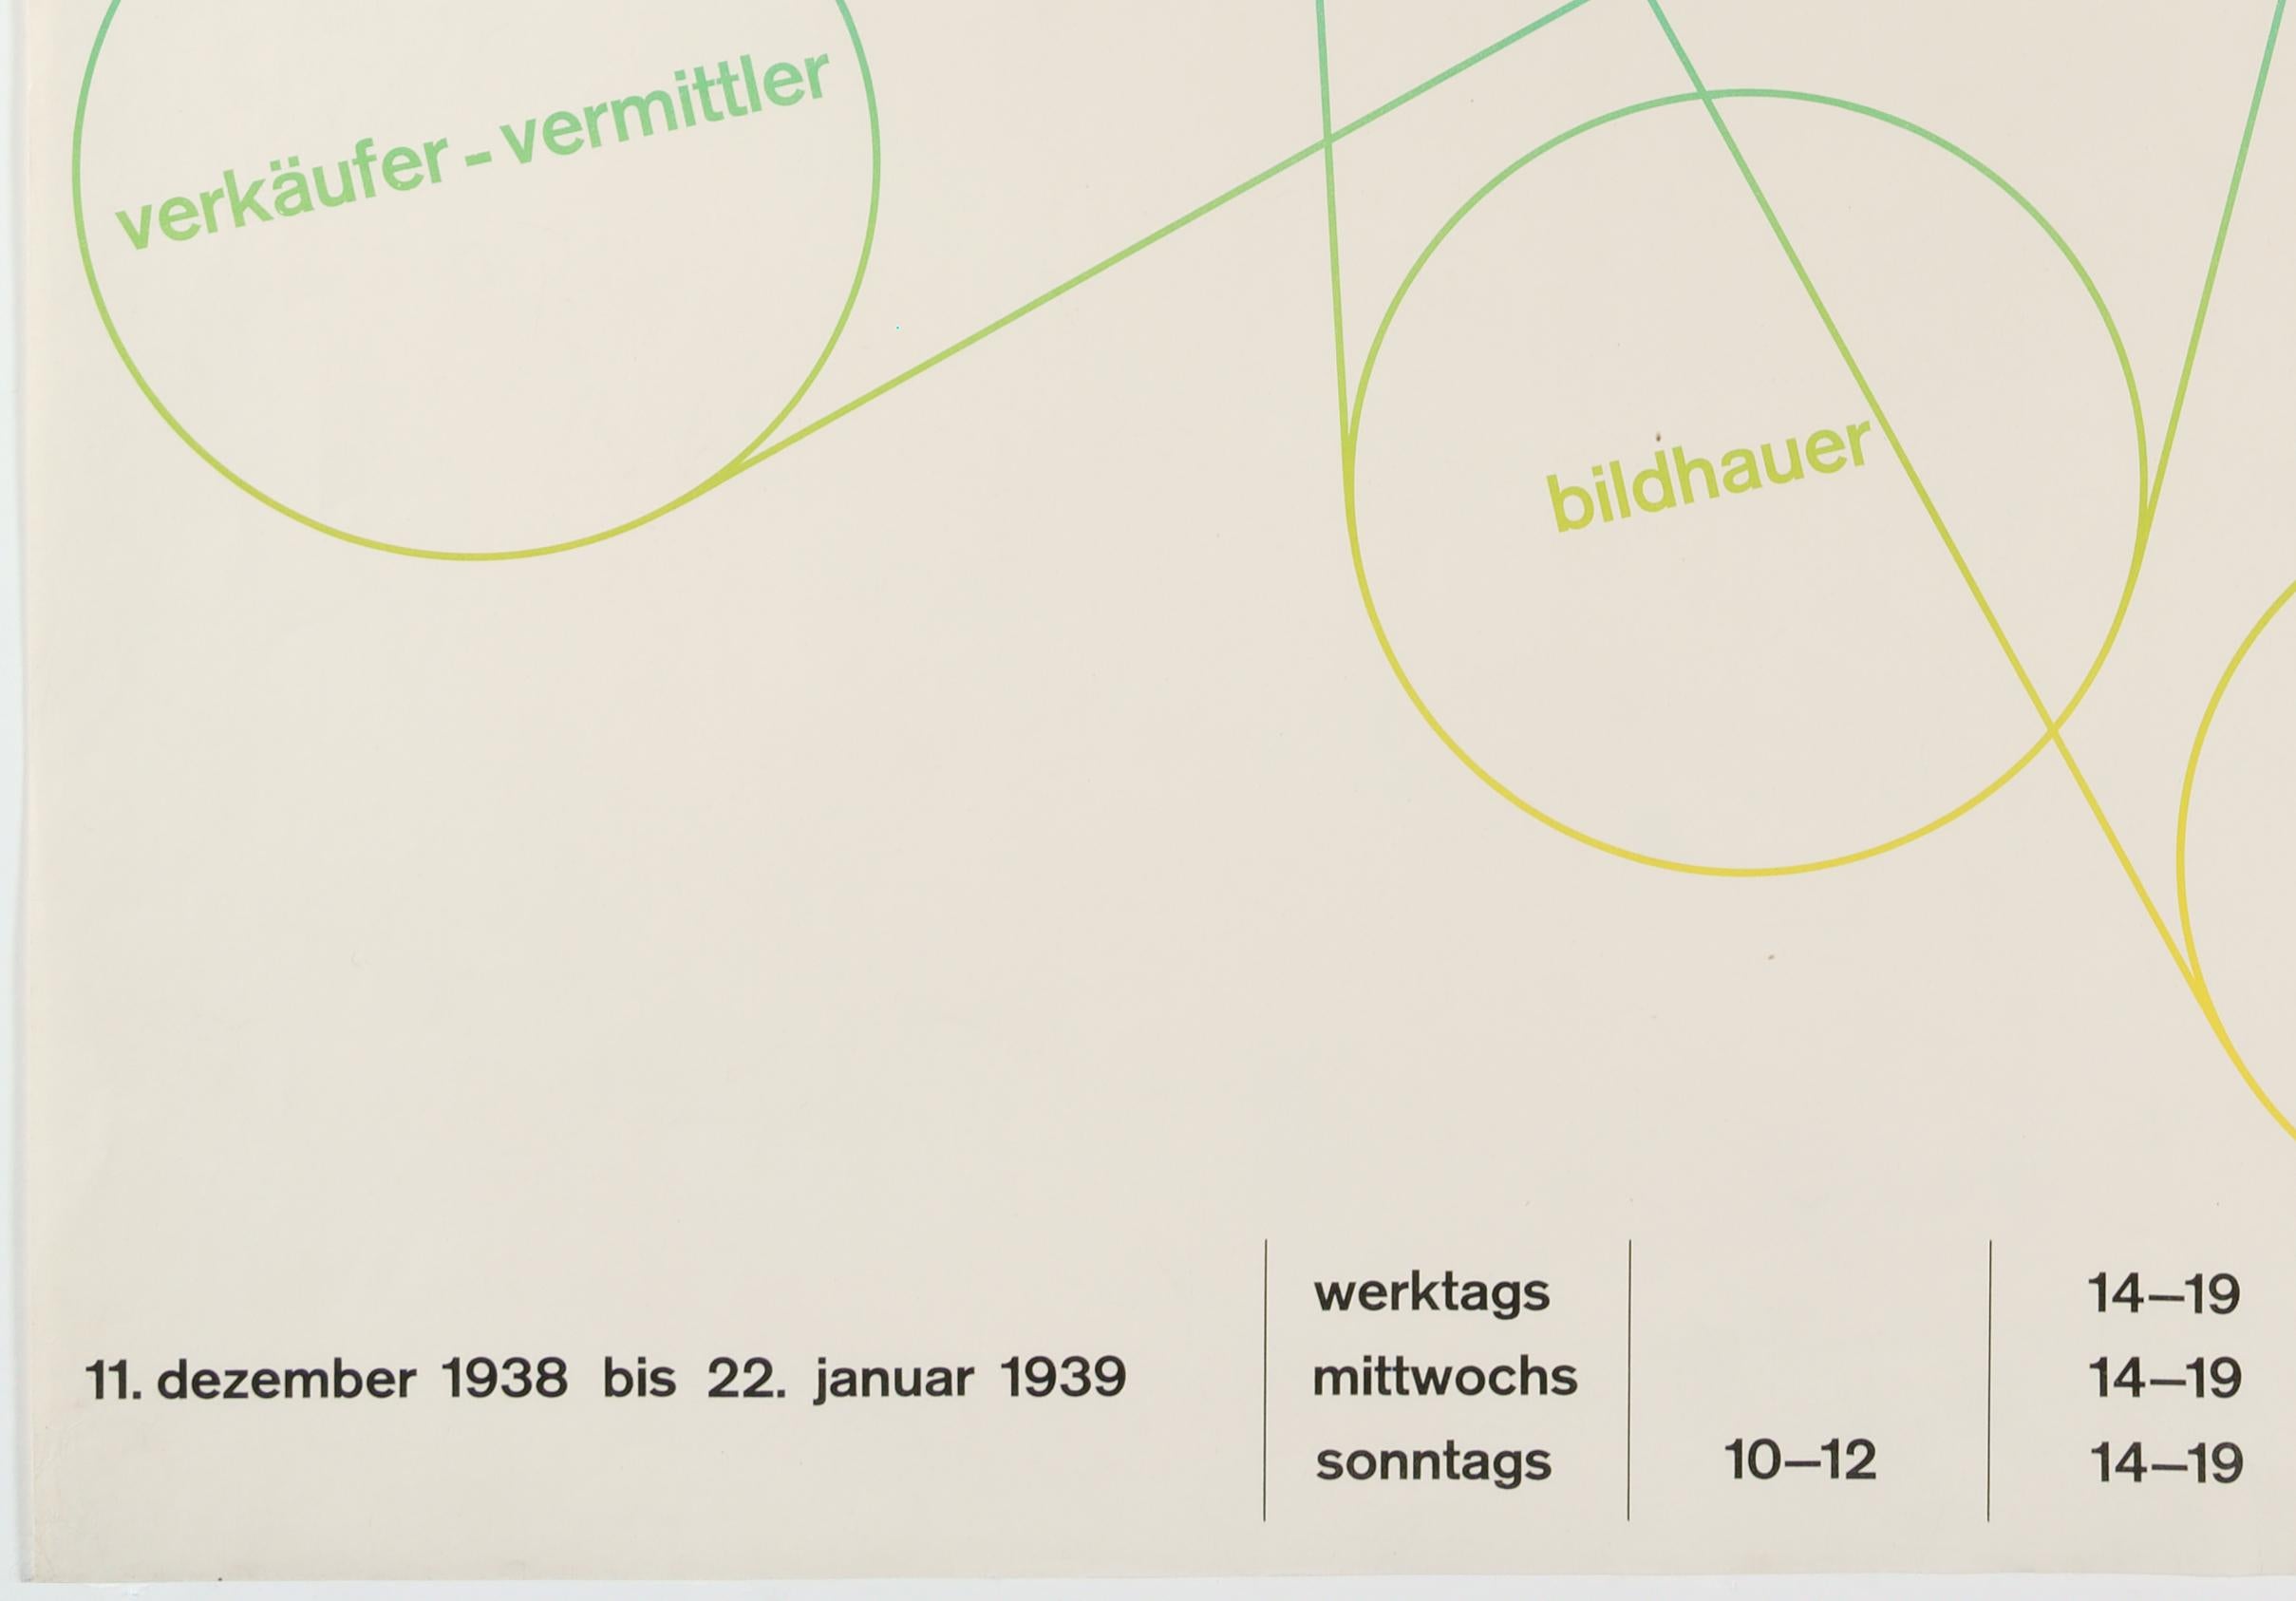 Werkbund – Original Swiss Exhibition Poster - Print by Hermann Eidenbenz